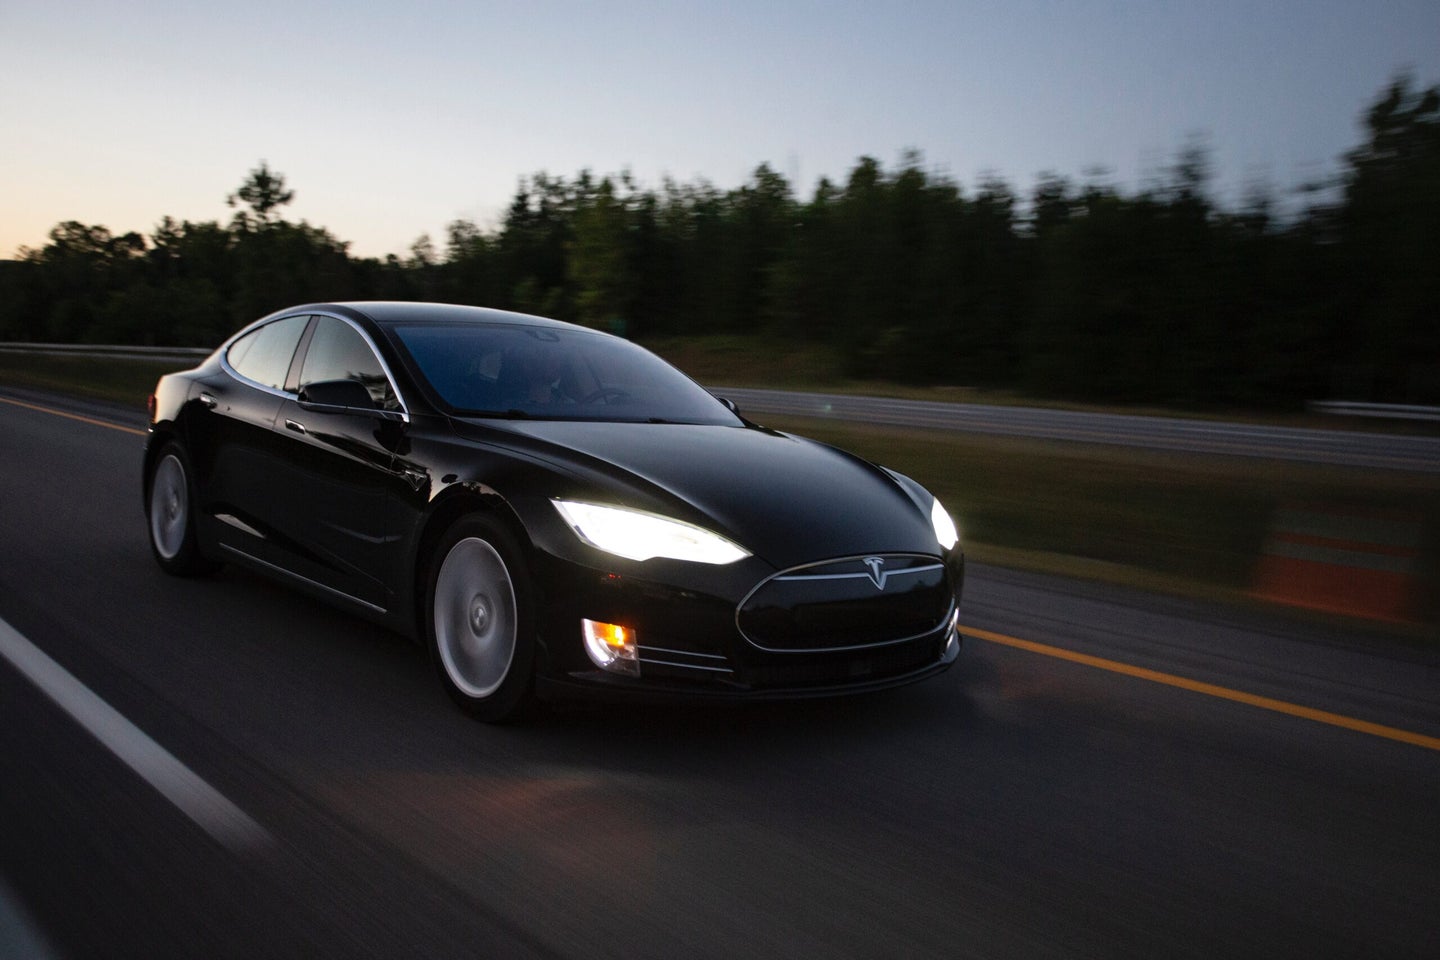 Black Tesla Model S driving on a road at dusk